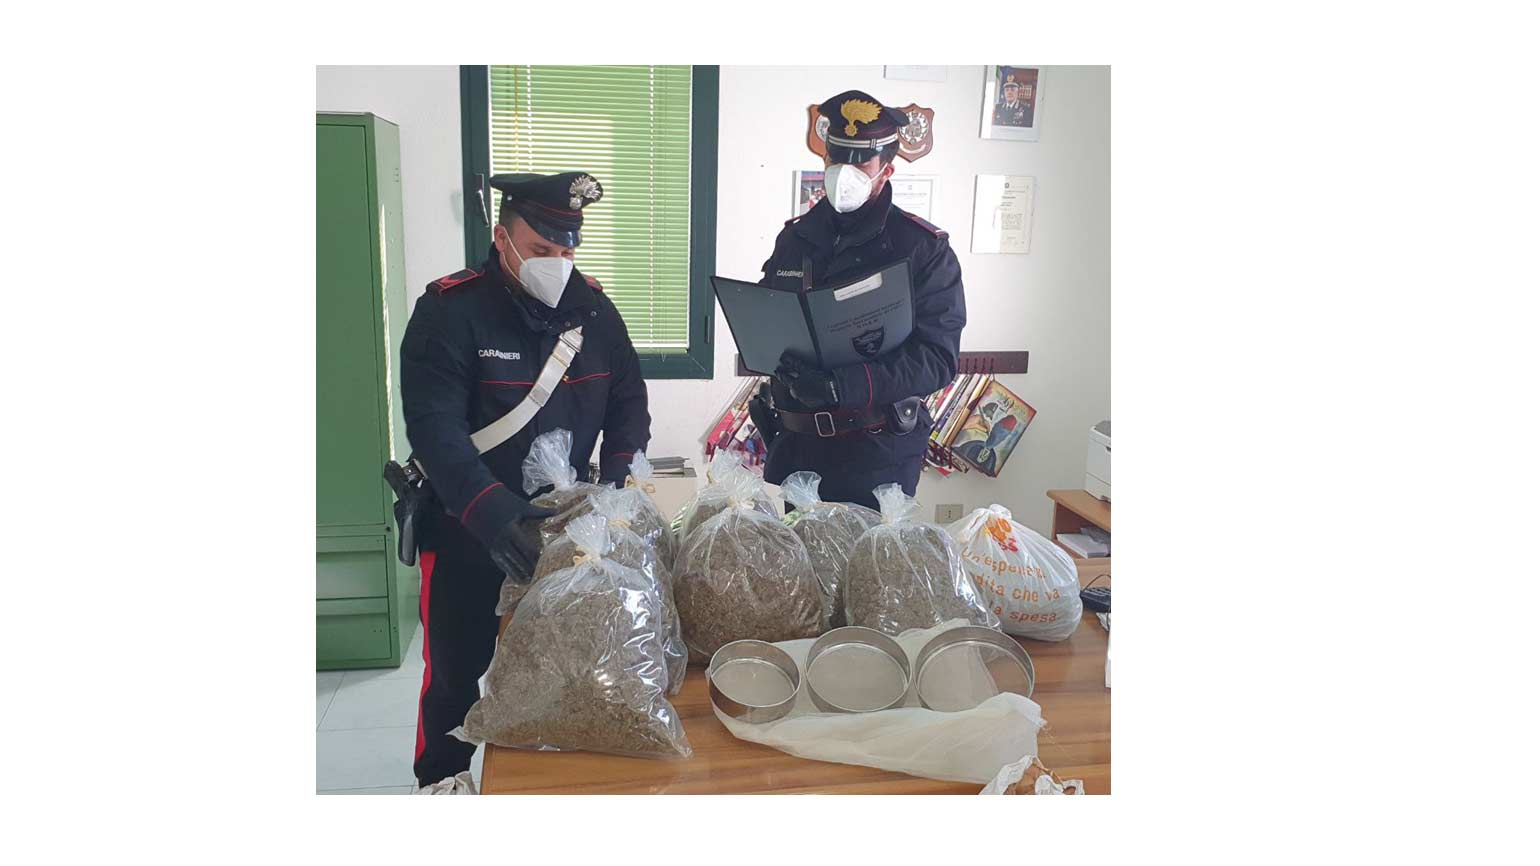 Loiri Porto San Paolo: 23 kg di marijuana in casa, arrestato